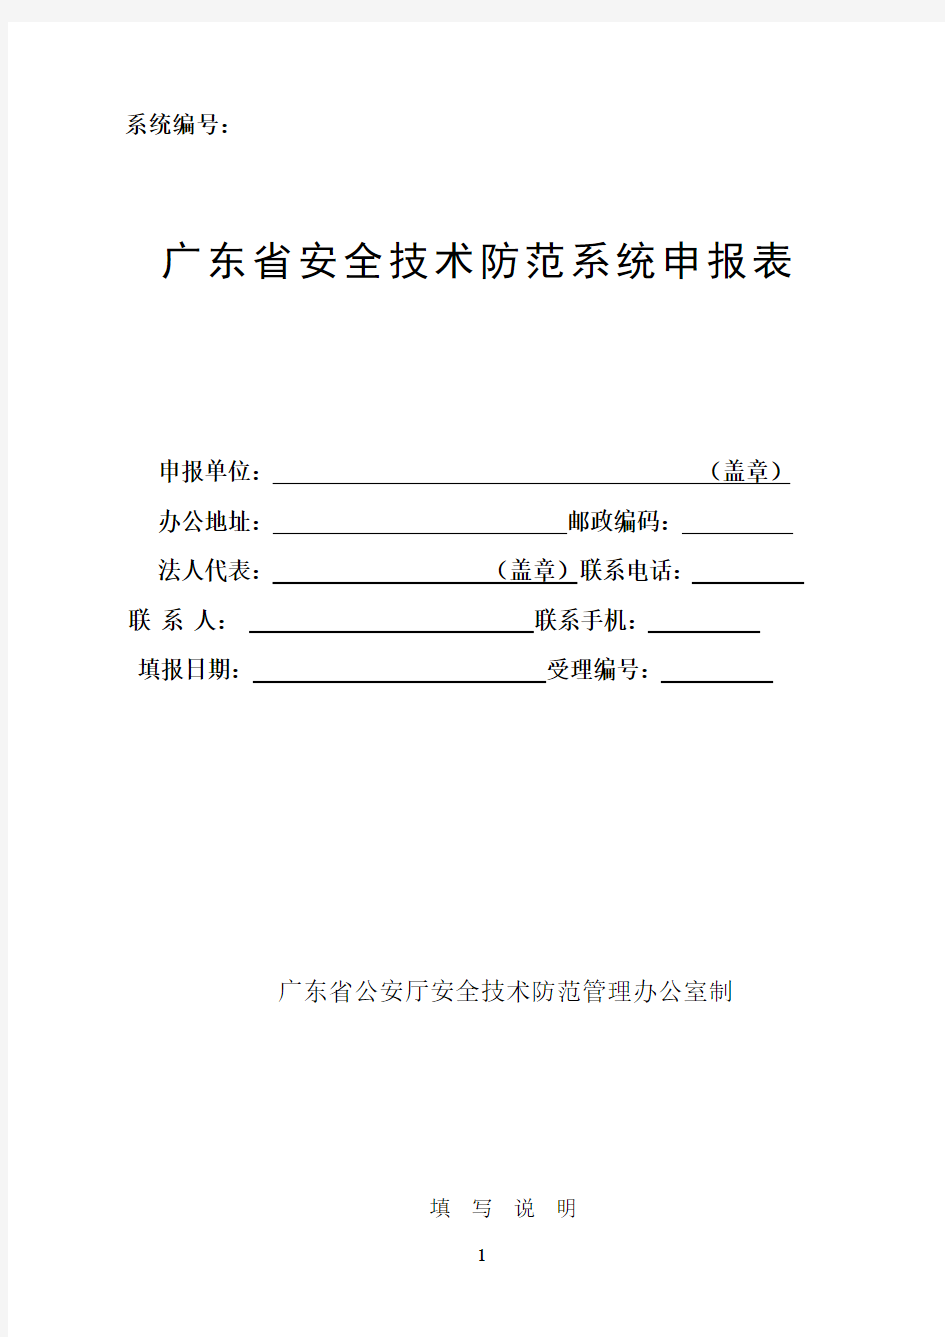 广东省安全技术防范系统申报表(新版)